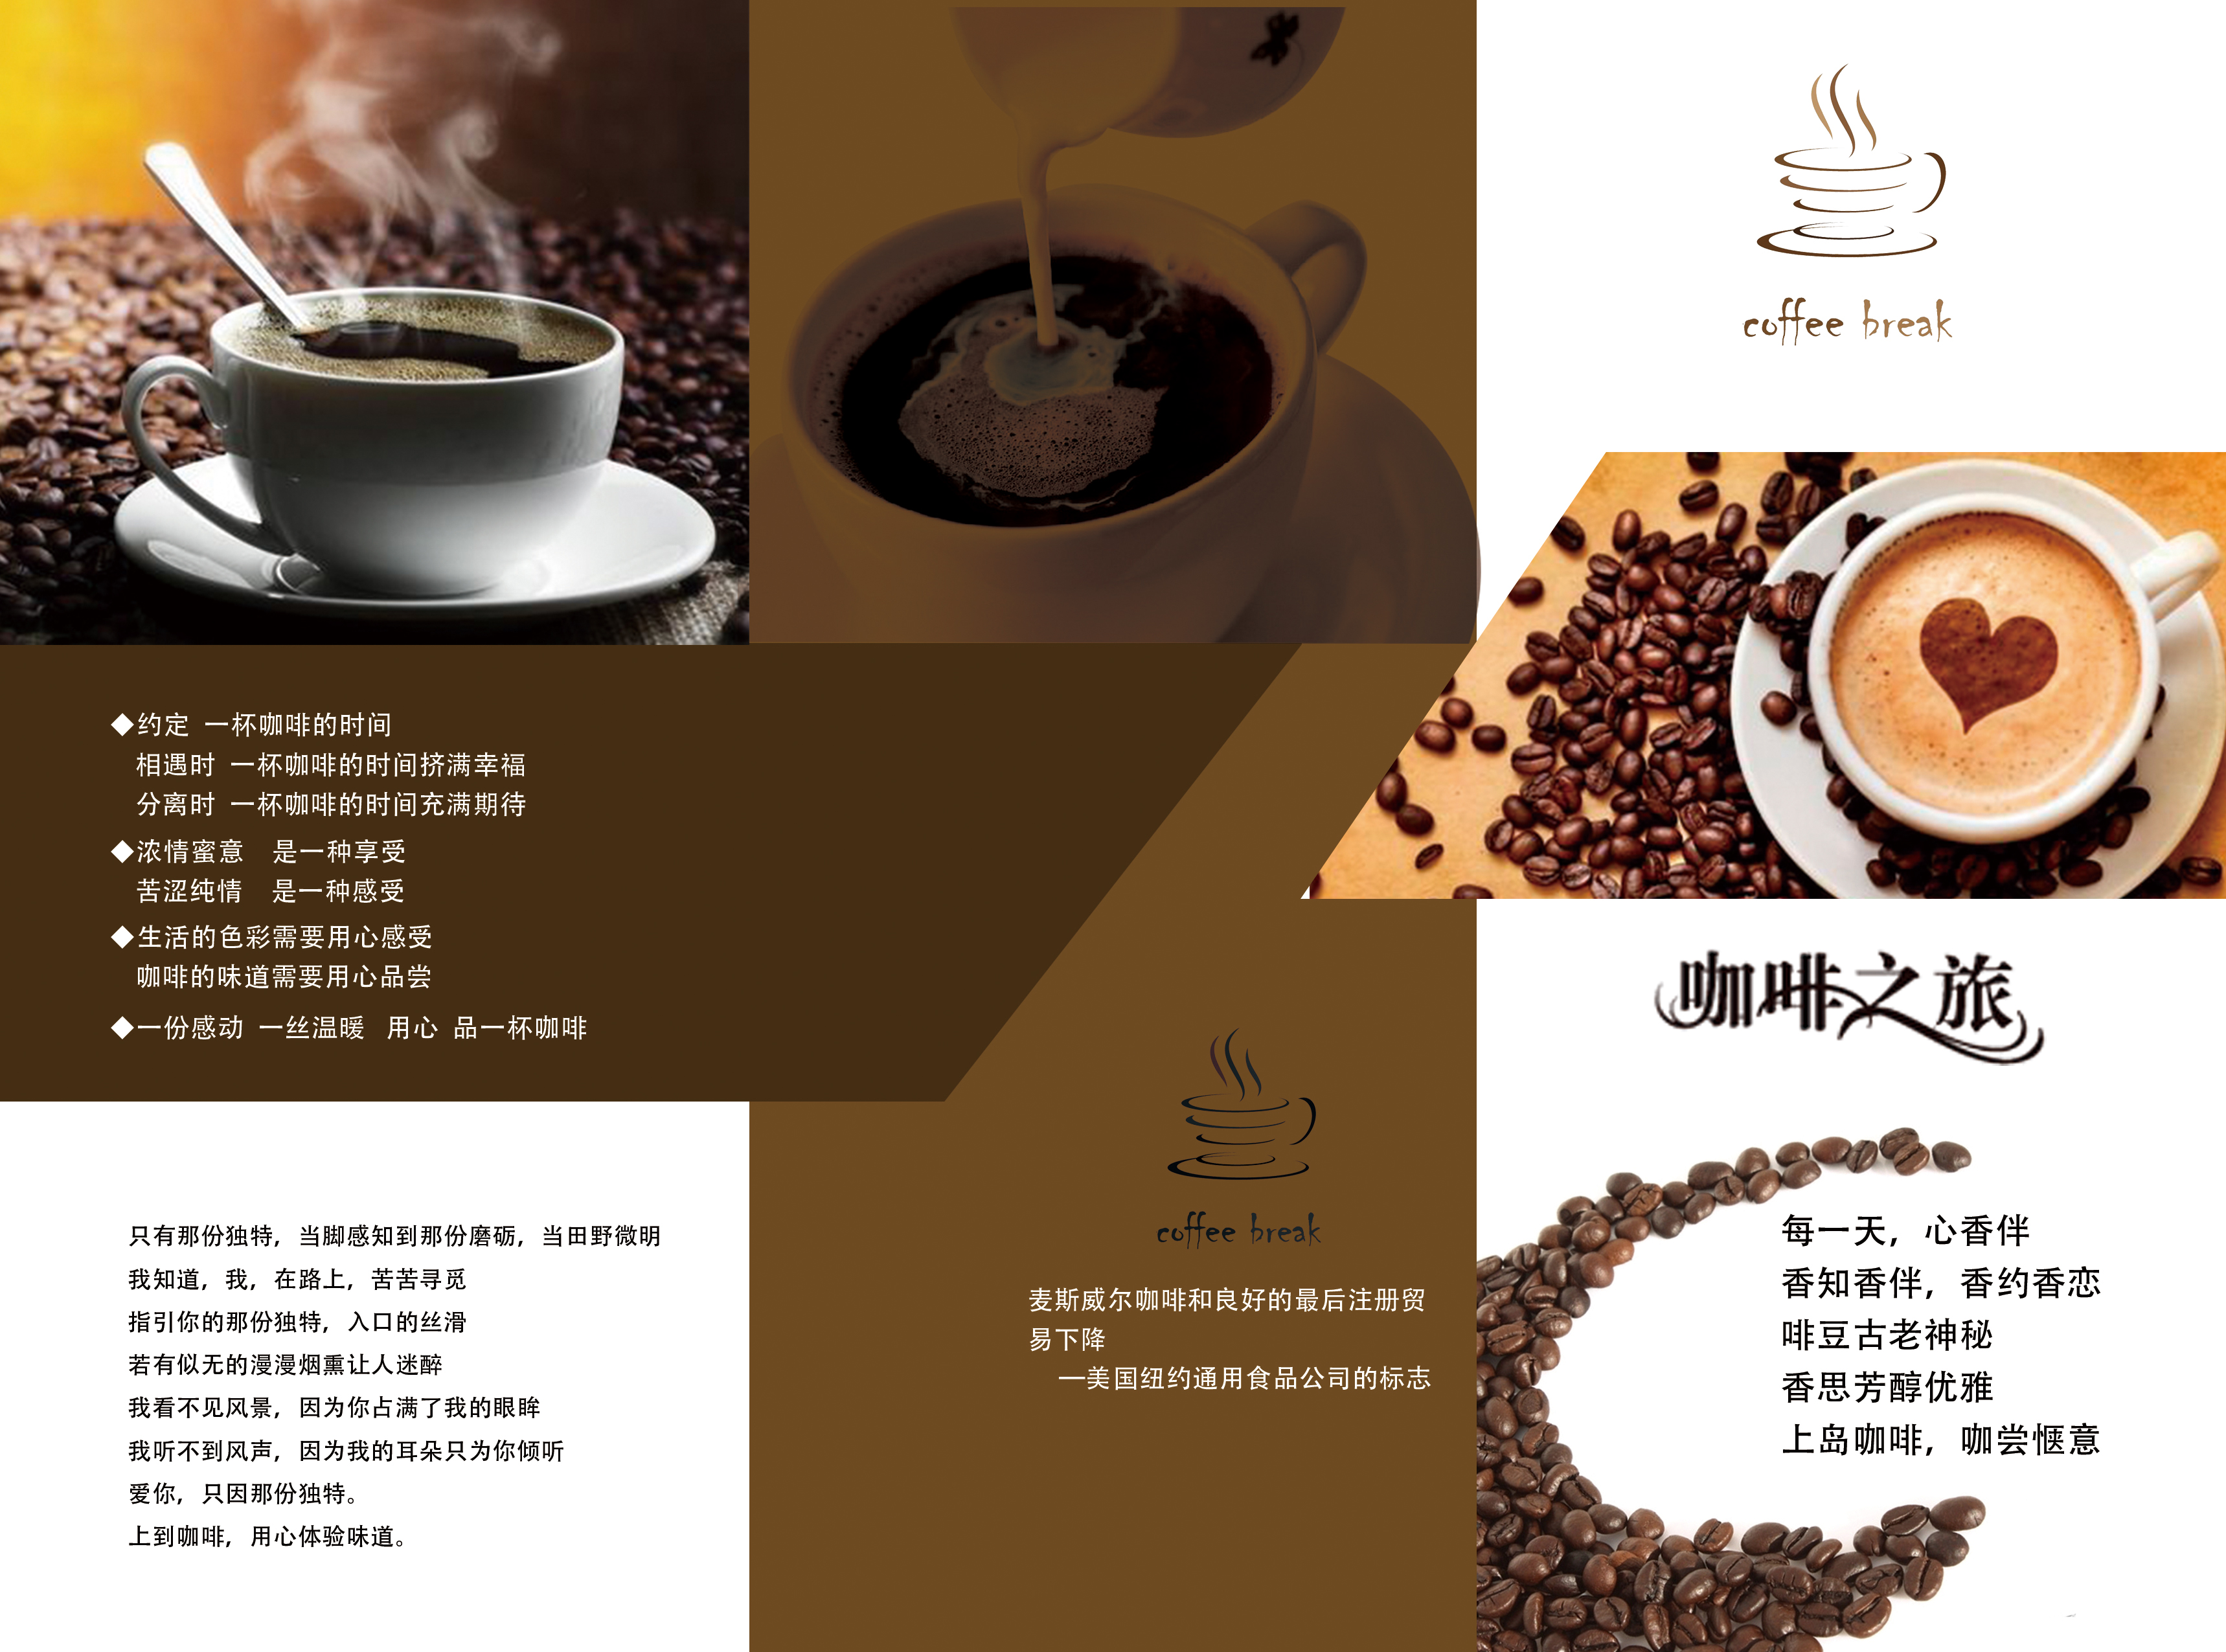 gogo体育首届中国咖啡烘焙团队赛总决赛举行